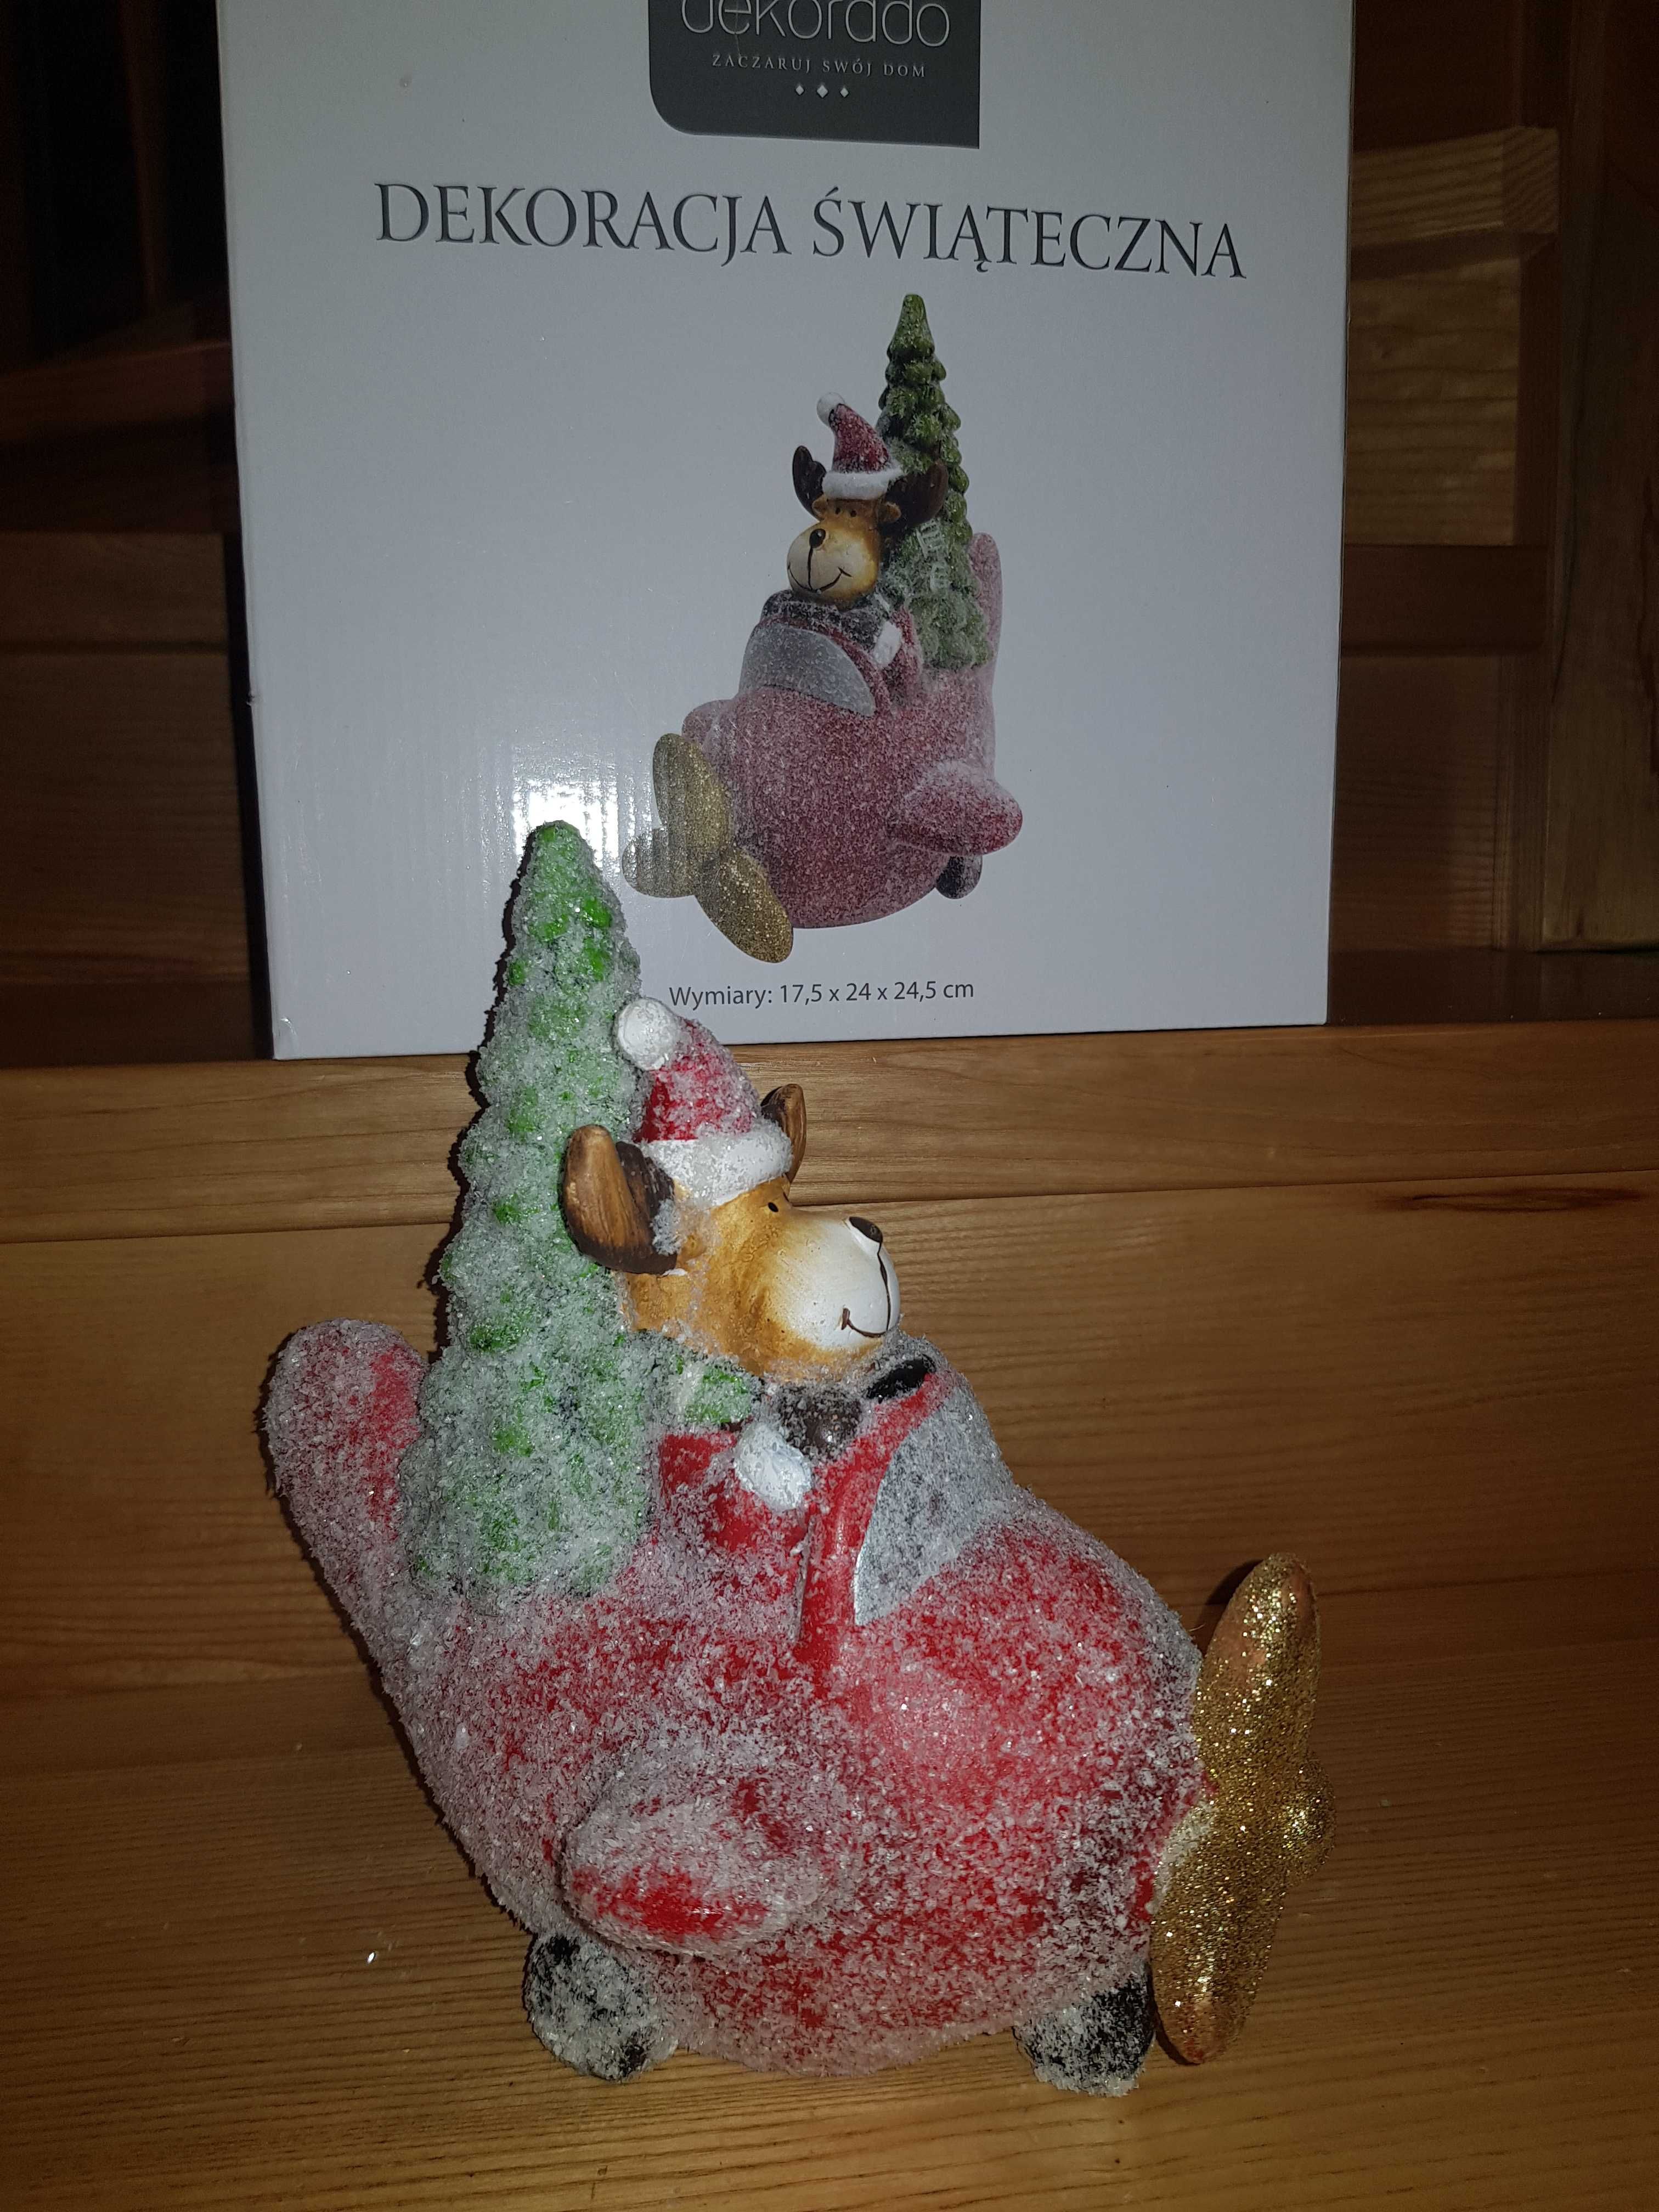 Ośnieżony renifer figurka świąteczna